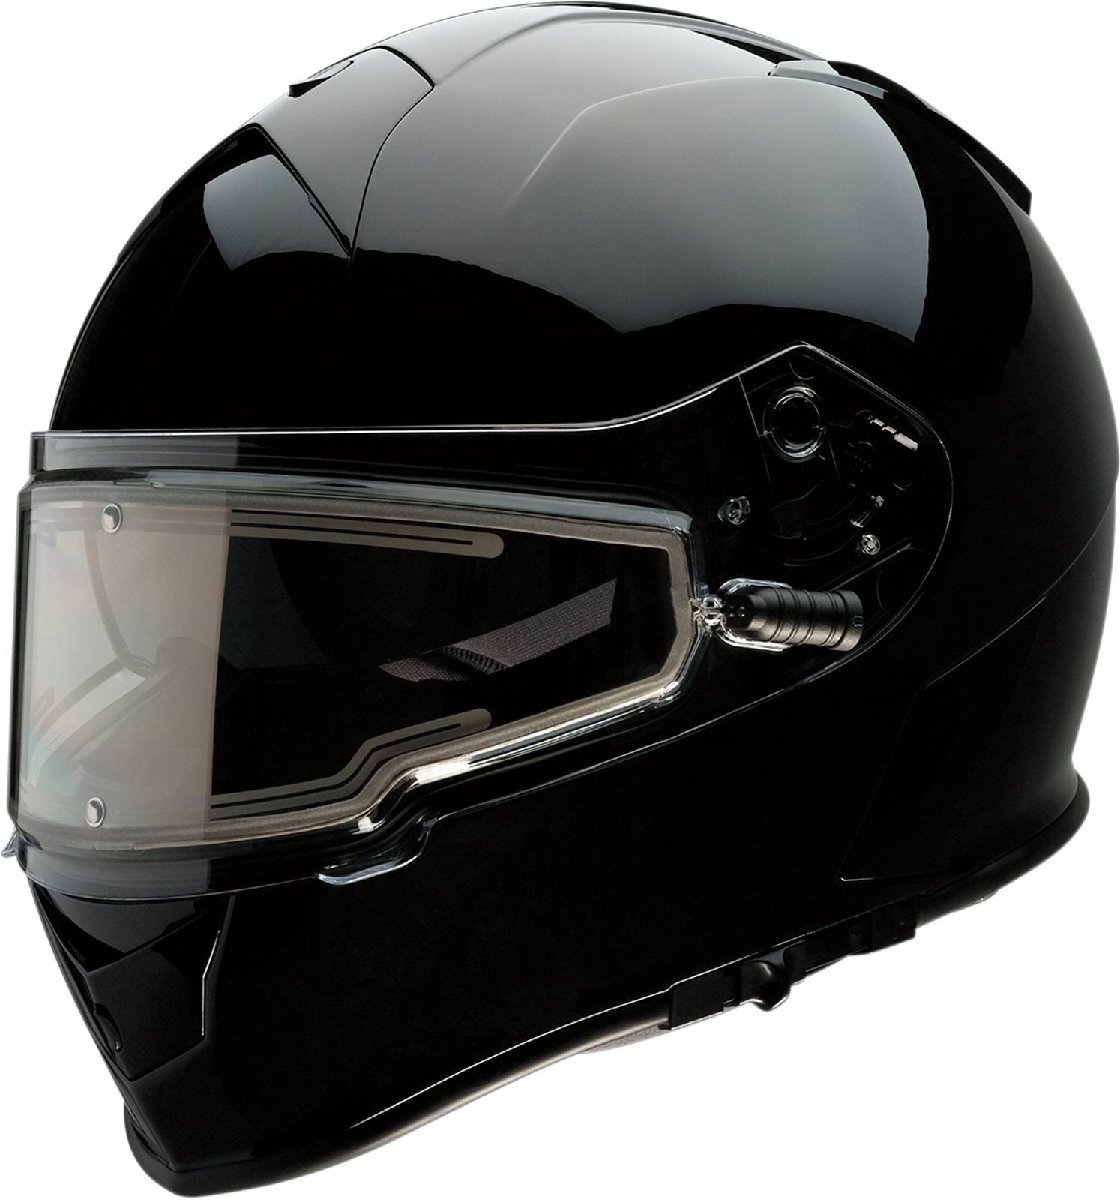 Sサイズ - ブラック - Z1R Warrant スノー エレクトリック/電熱シールド付き ヘルメット